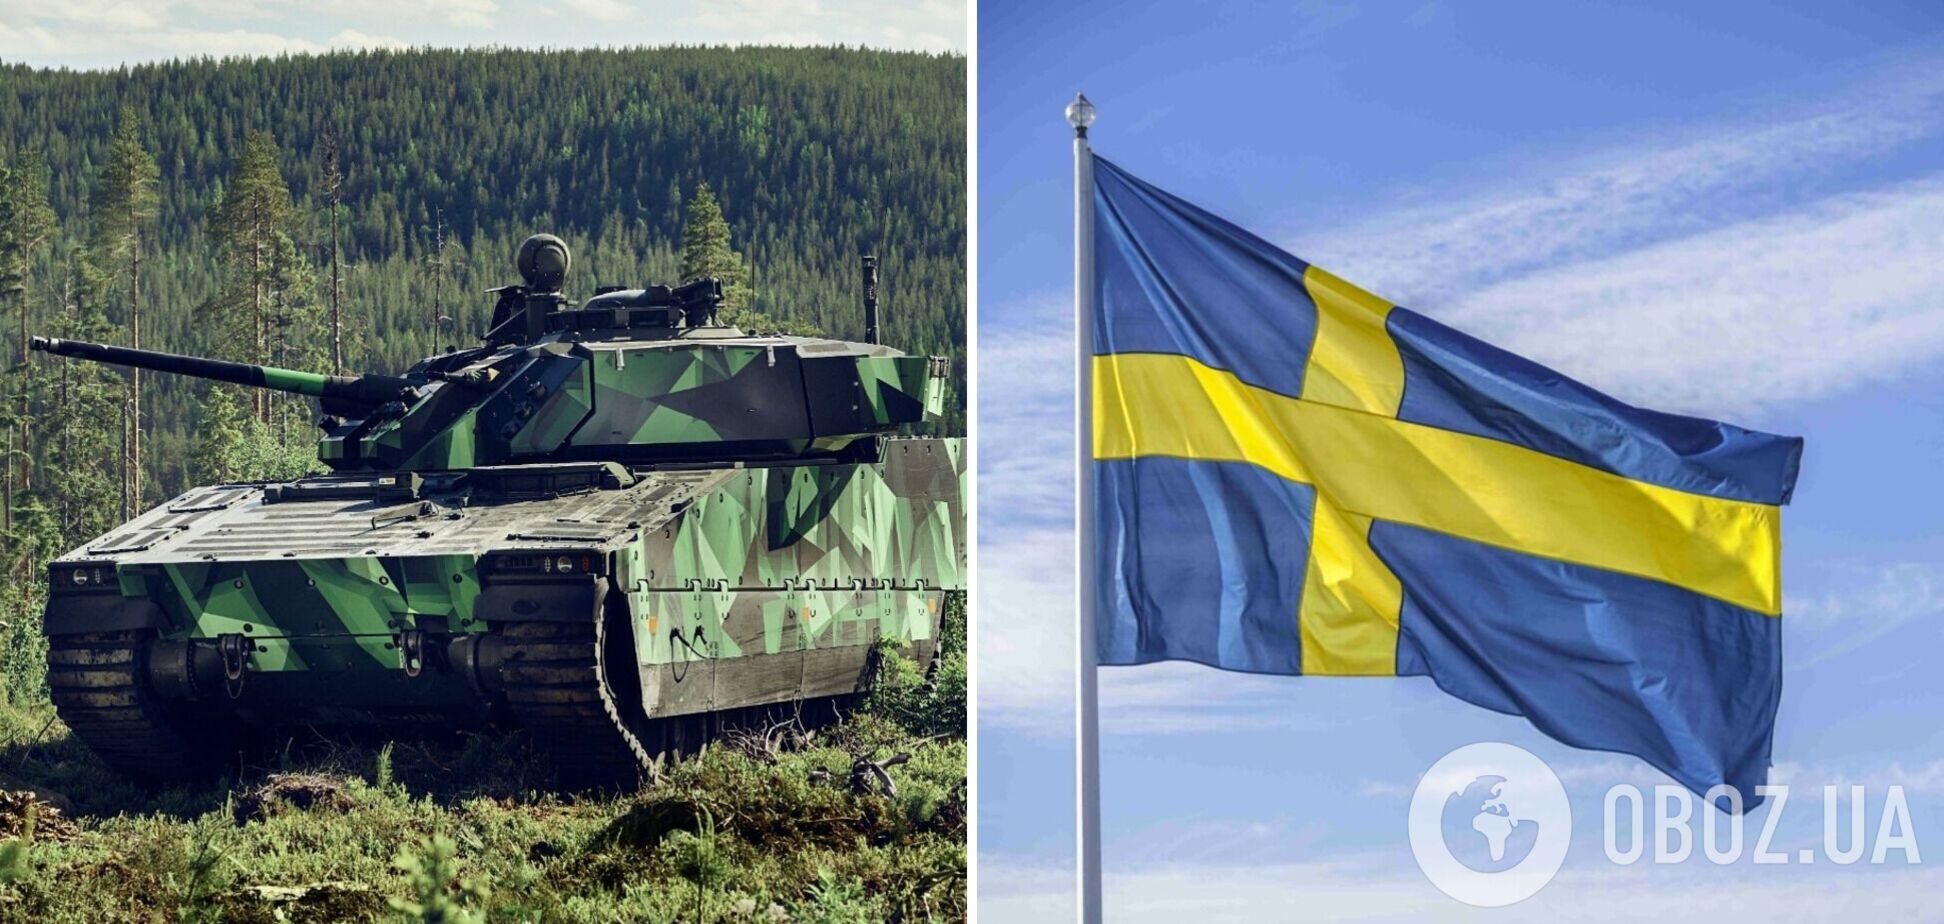 Шведские CV-90